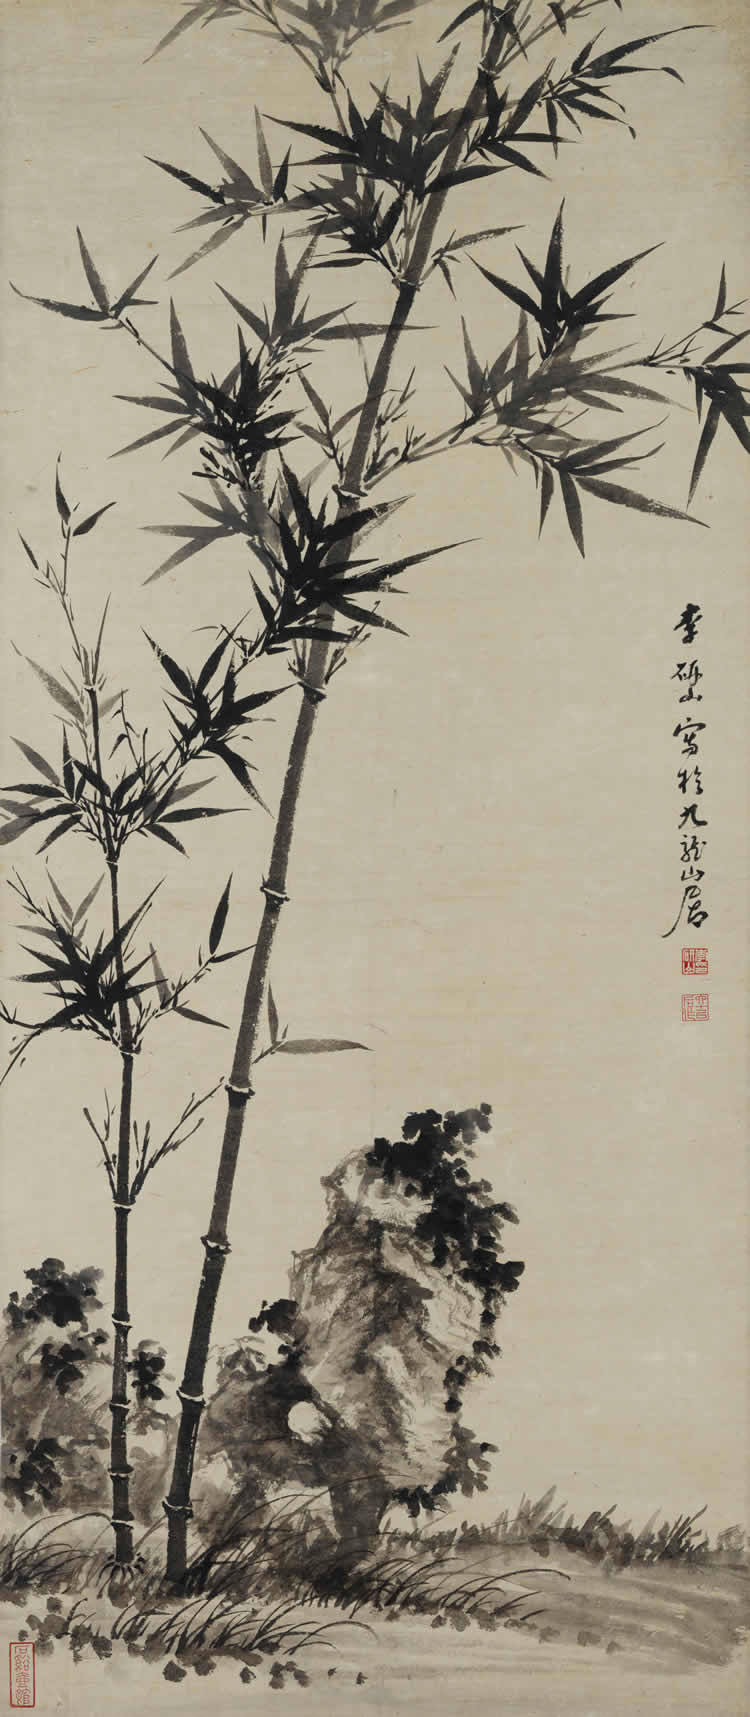 Twin bamboos